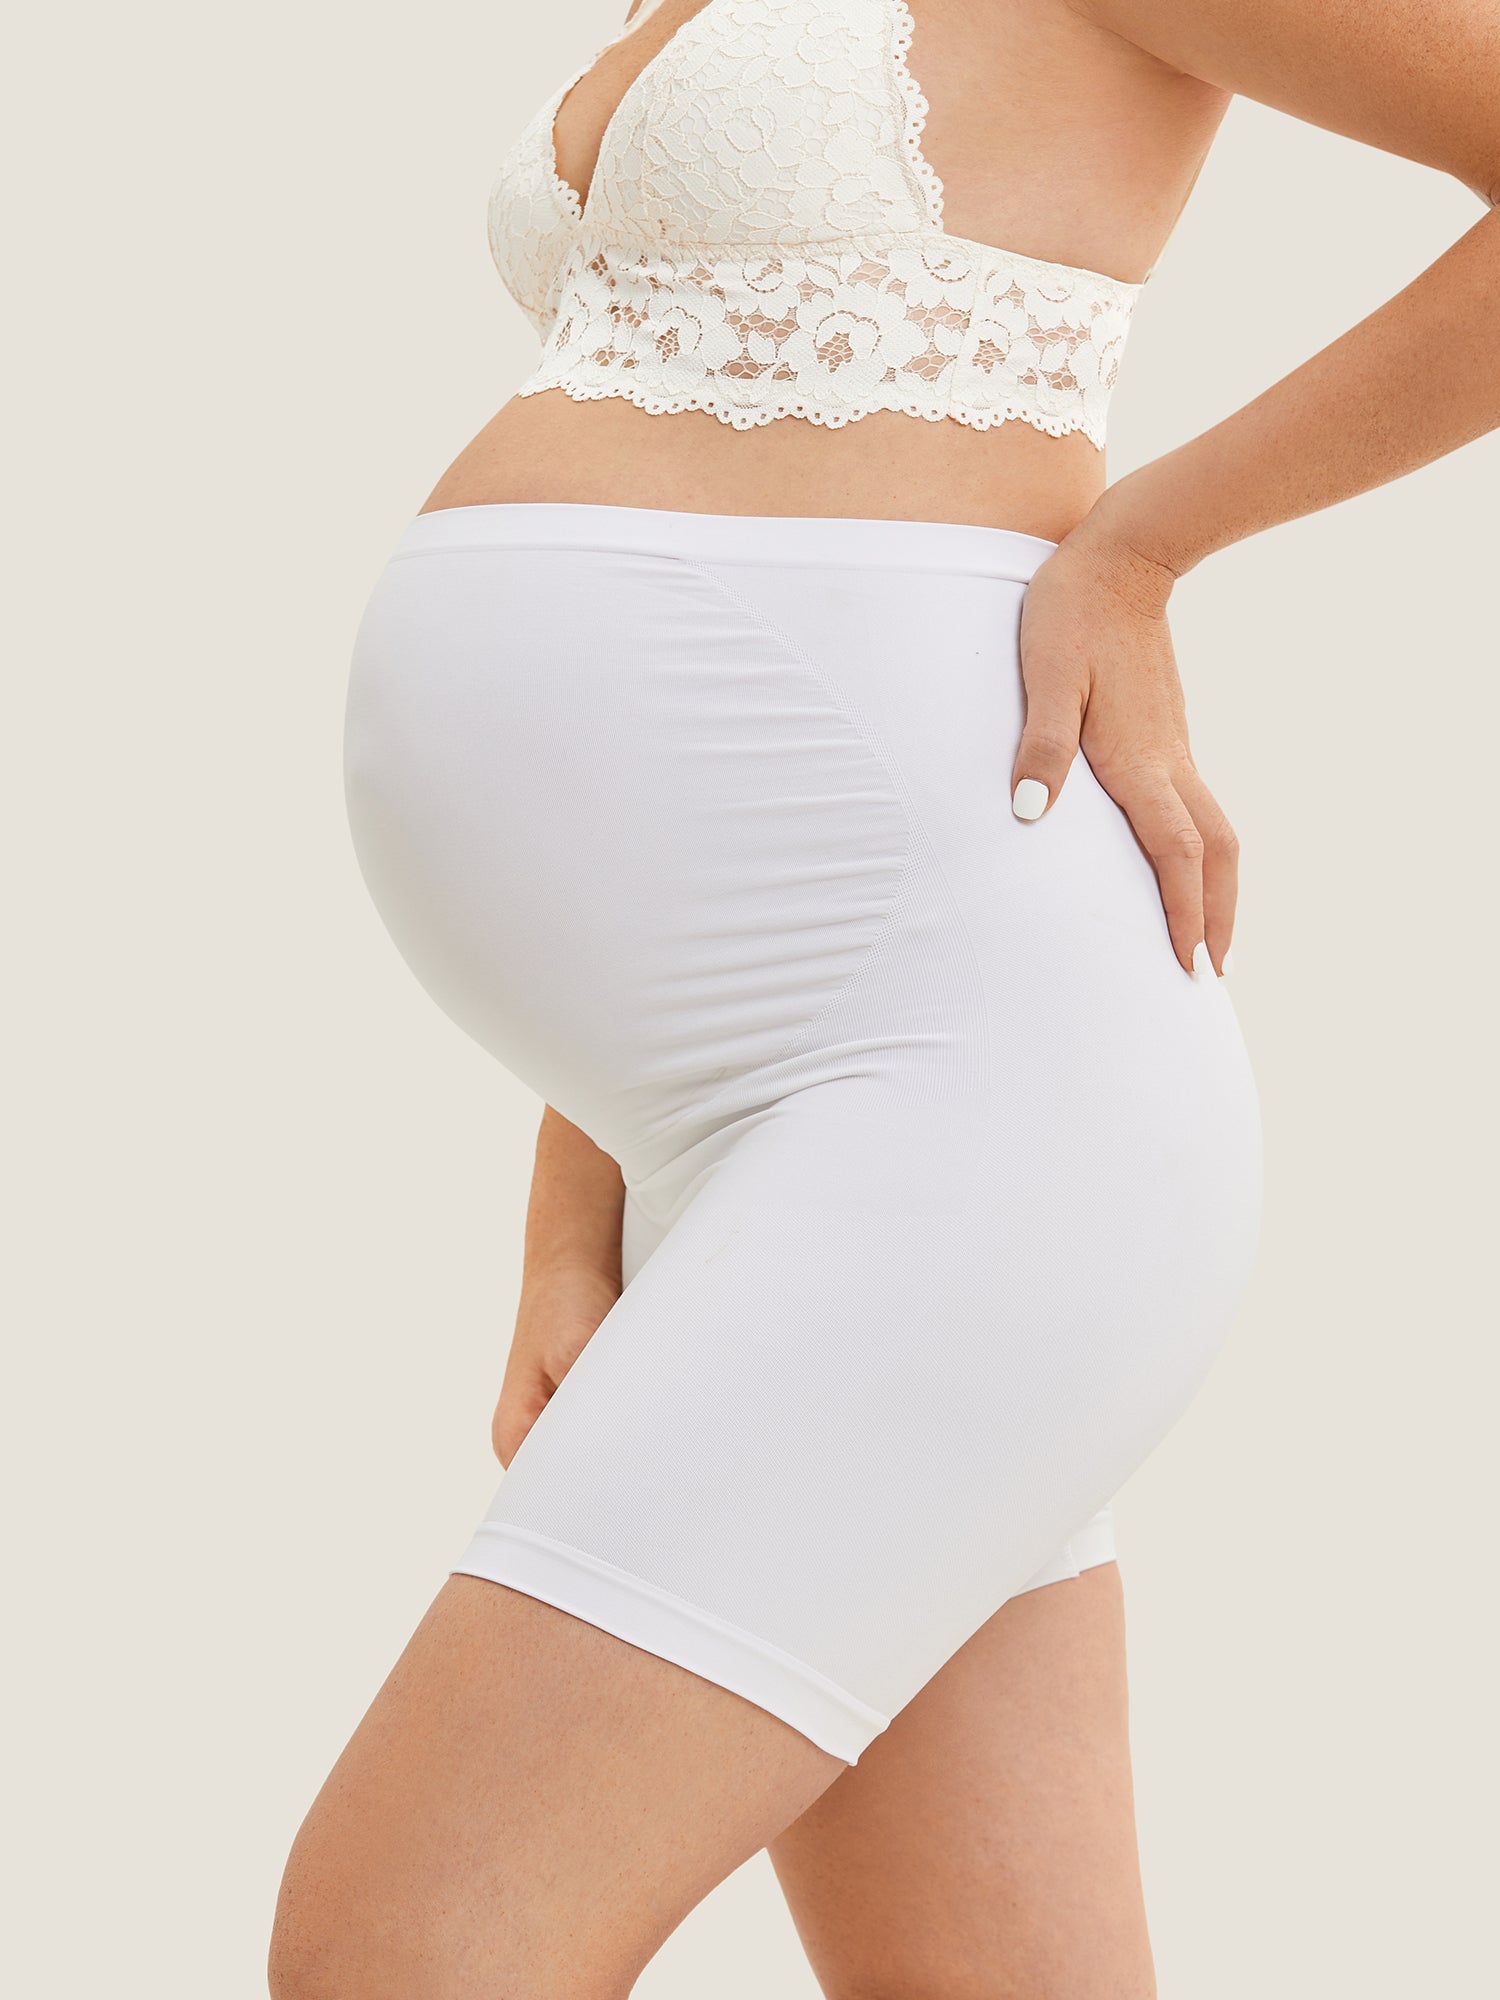 High Waist Shapewear Maternity Shorts|Seamless White